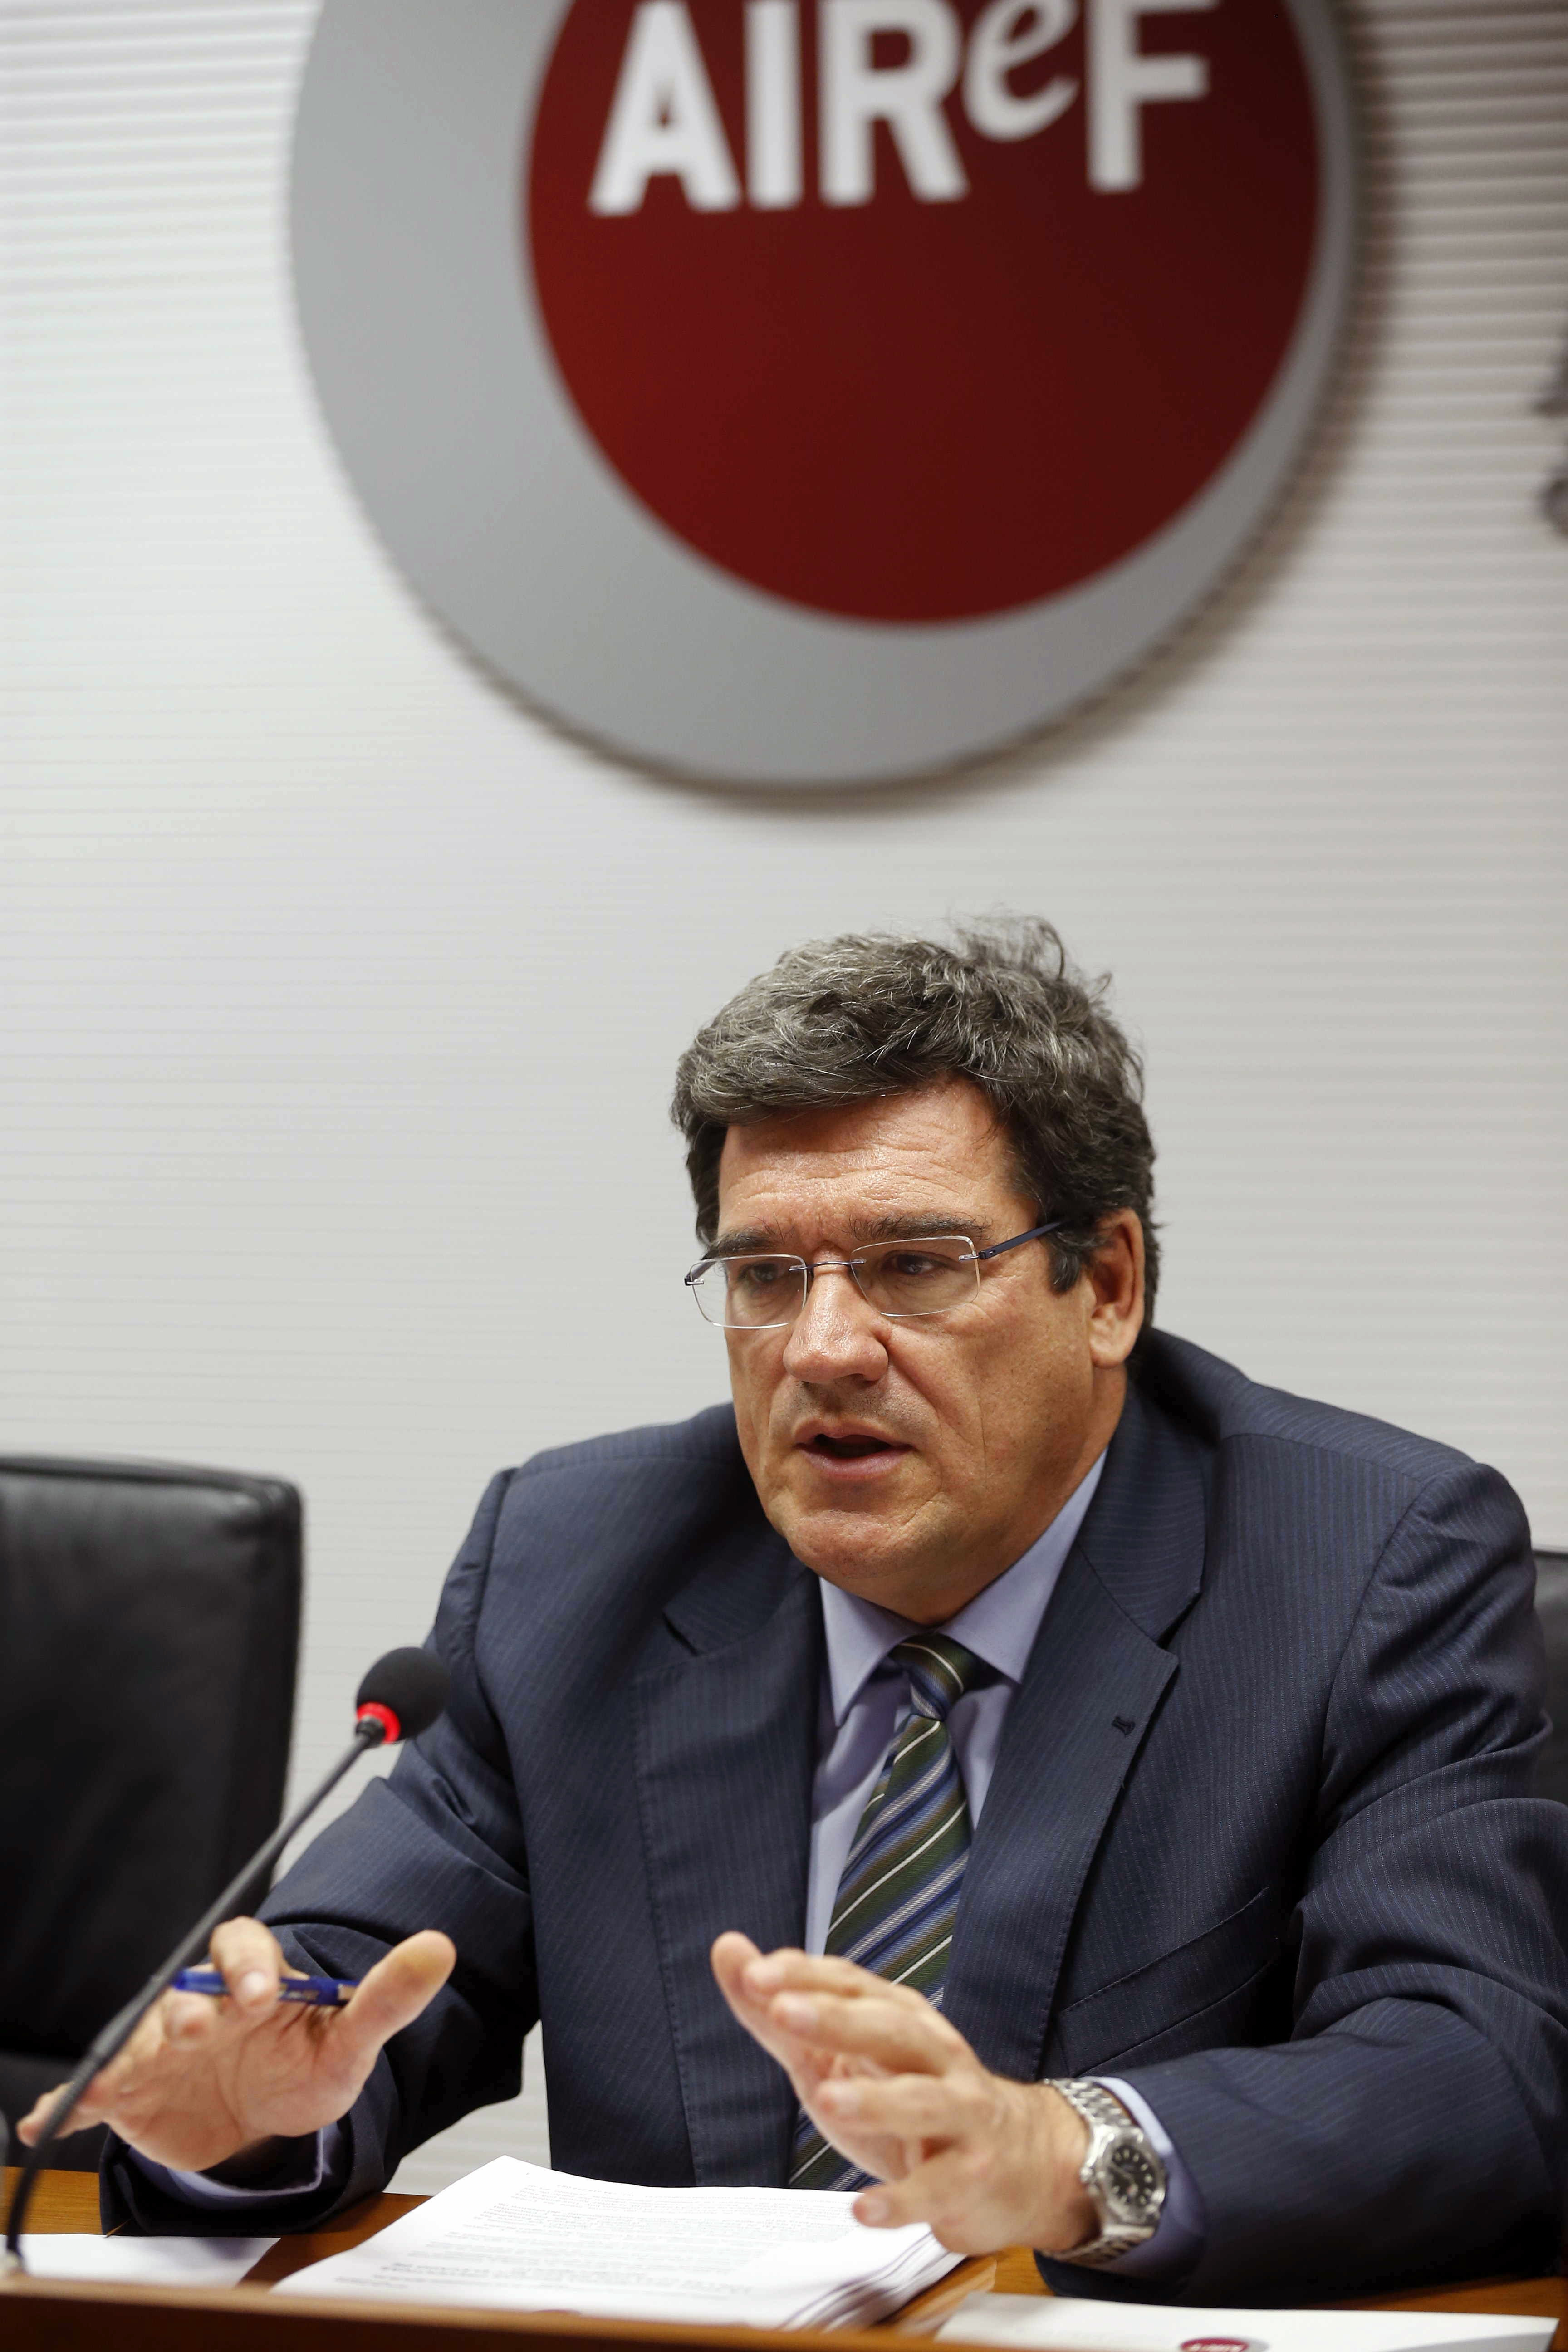 El presidente de la Airef, José Luis Escrivá